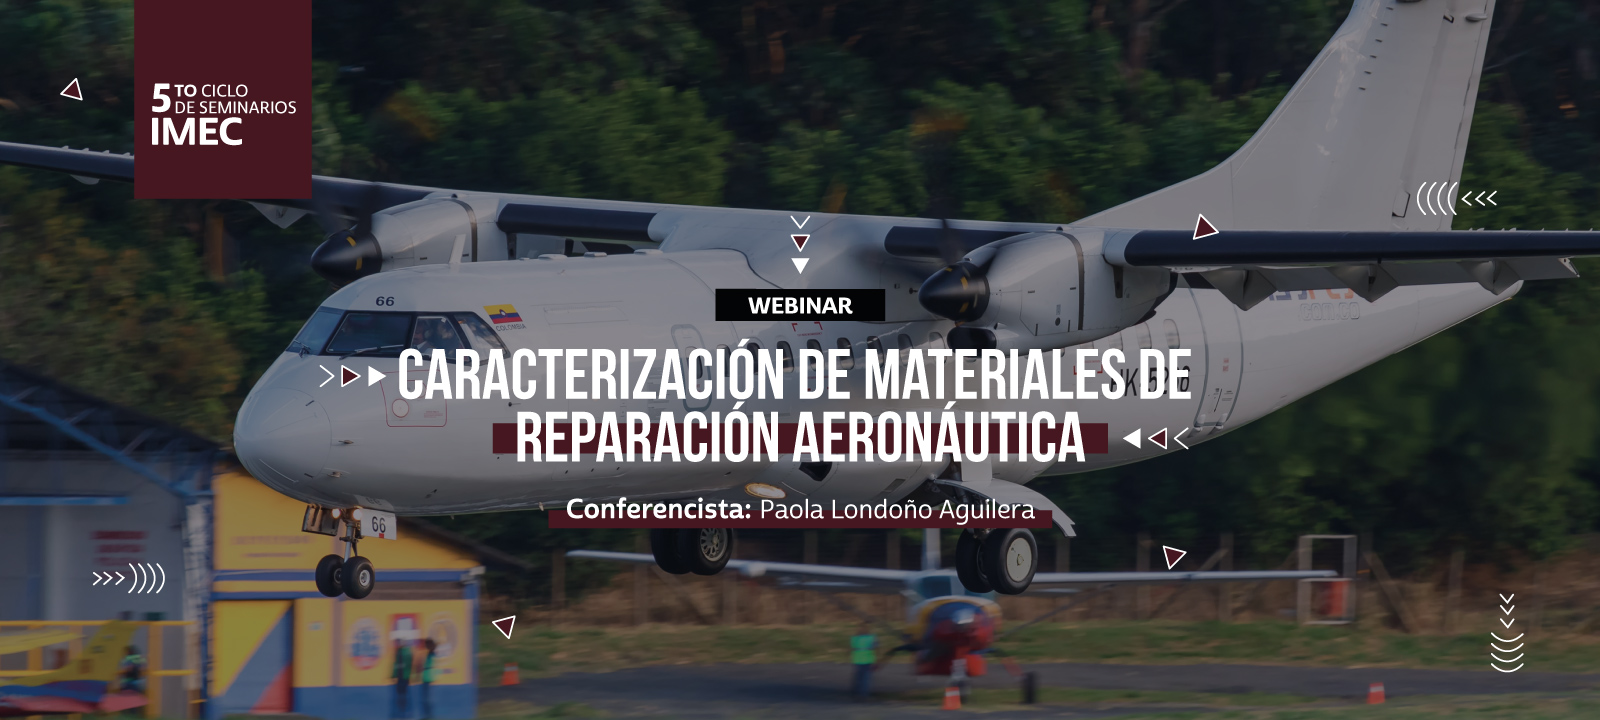 Paola Londoño nos contará sobre materiales usados para la reparación aeronautica